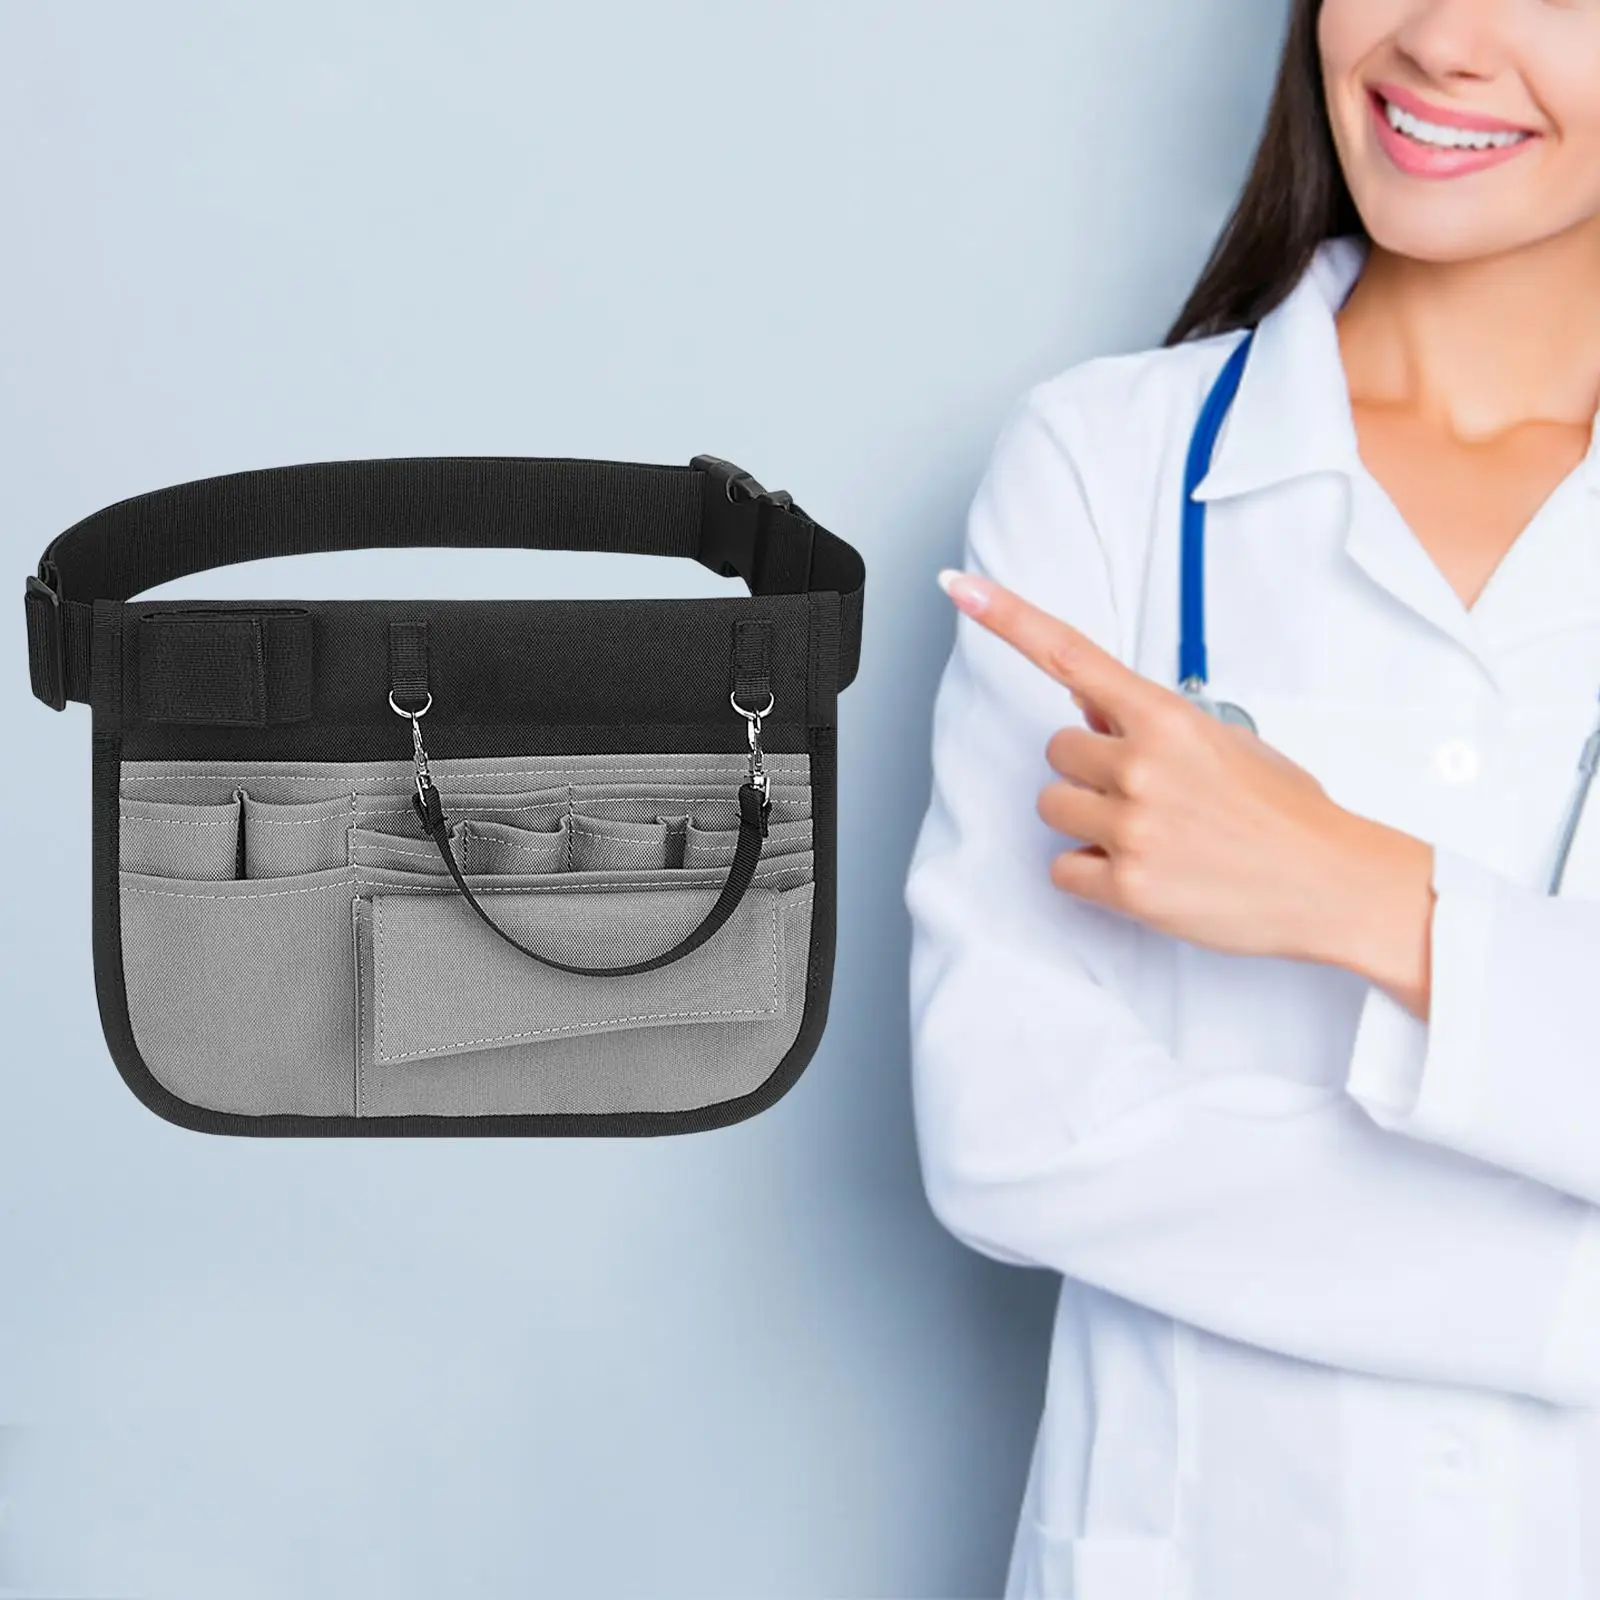 Portable Nurses Pouch Waist Bag Adjustable Belt Strap Fanny Pack Quick Pick